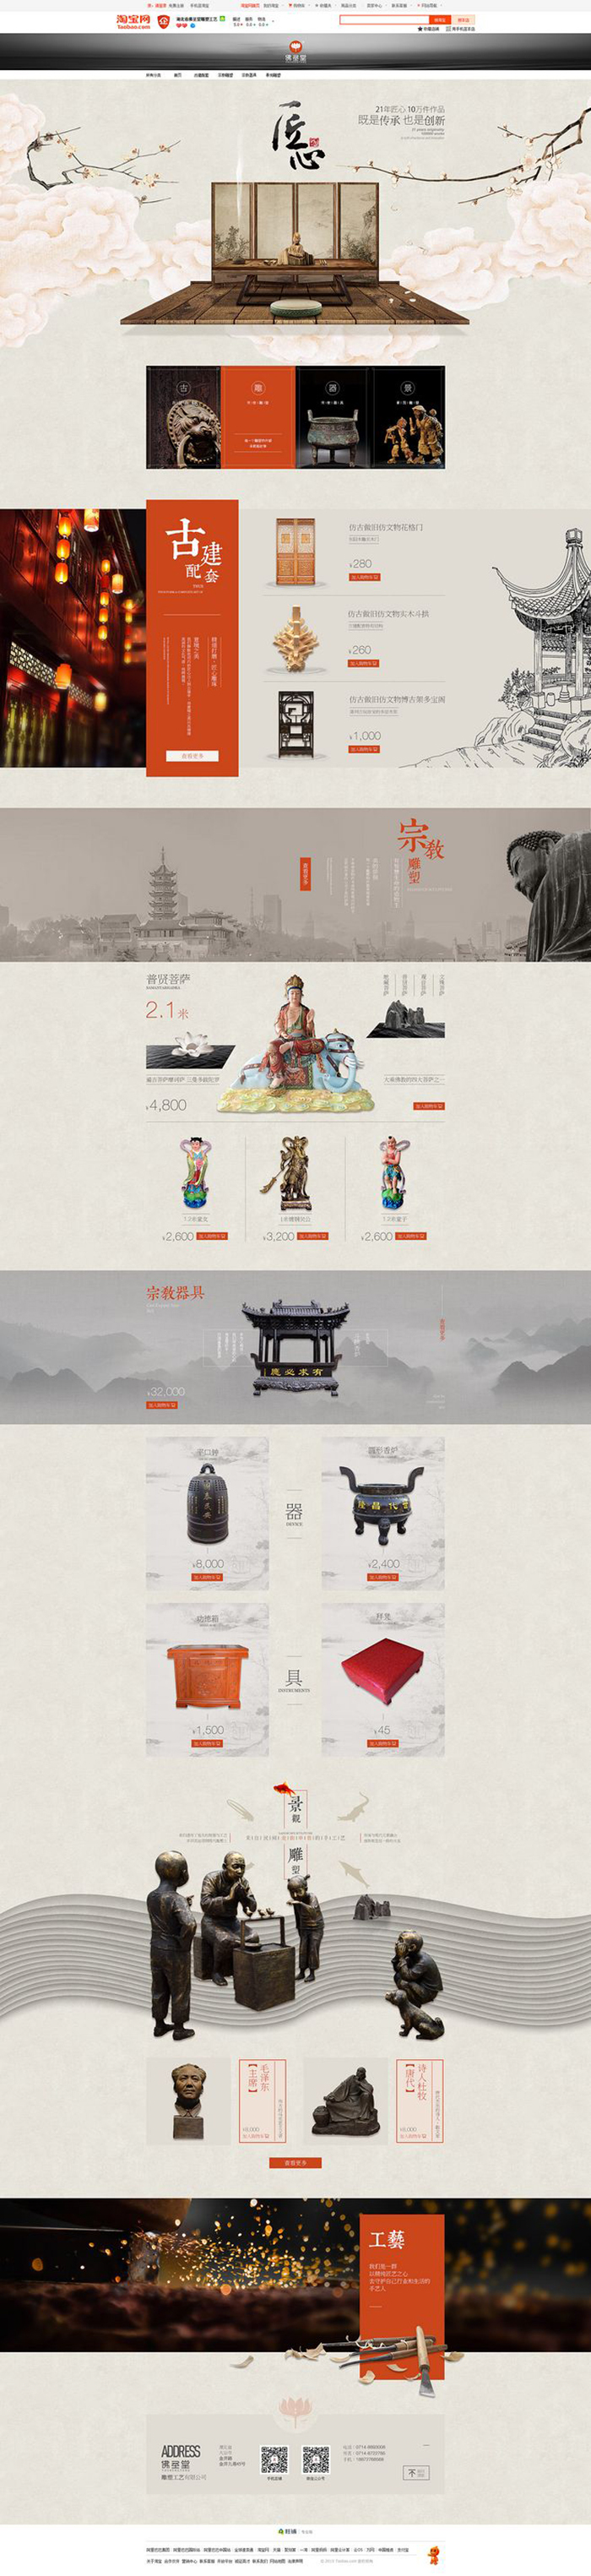 淘宝美工九里首页 传统 中国风 宗教作品